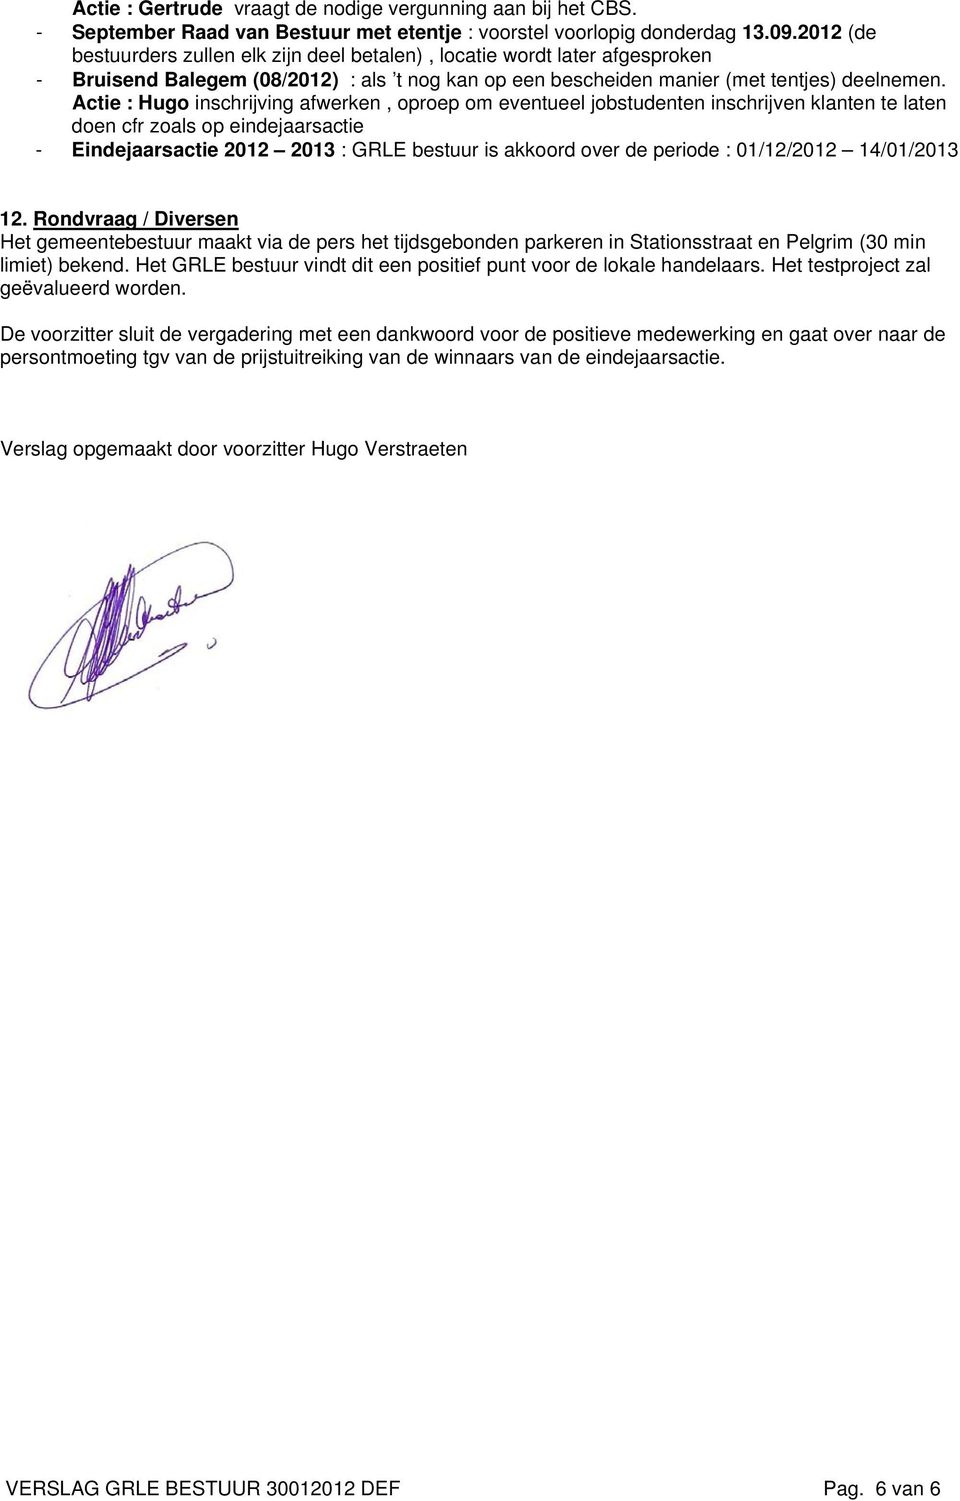 Actie : Hugo inschrijving afwerken, oproep om eventueel jobstudenten inschrijven klanten te laten doen cfr zoals op eindejaarsactie - Eindejaarsactie 2012 2013 : GRLE bestuur is akkoord over de